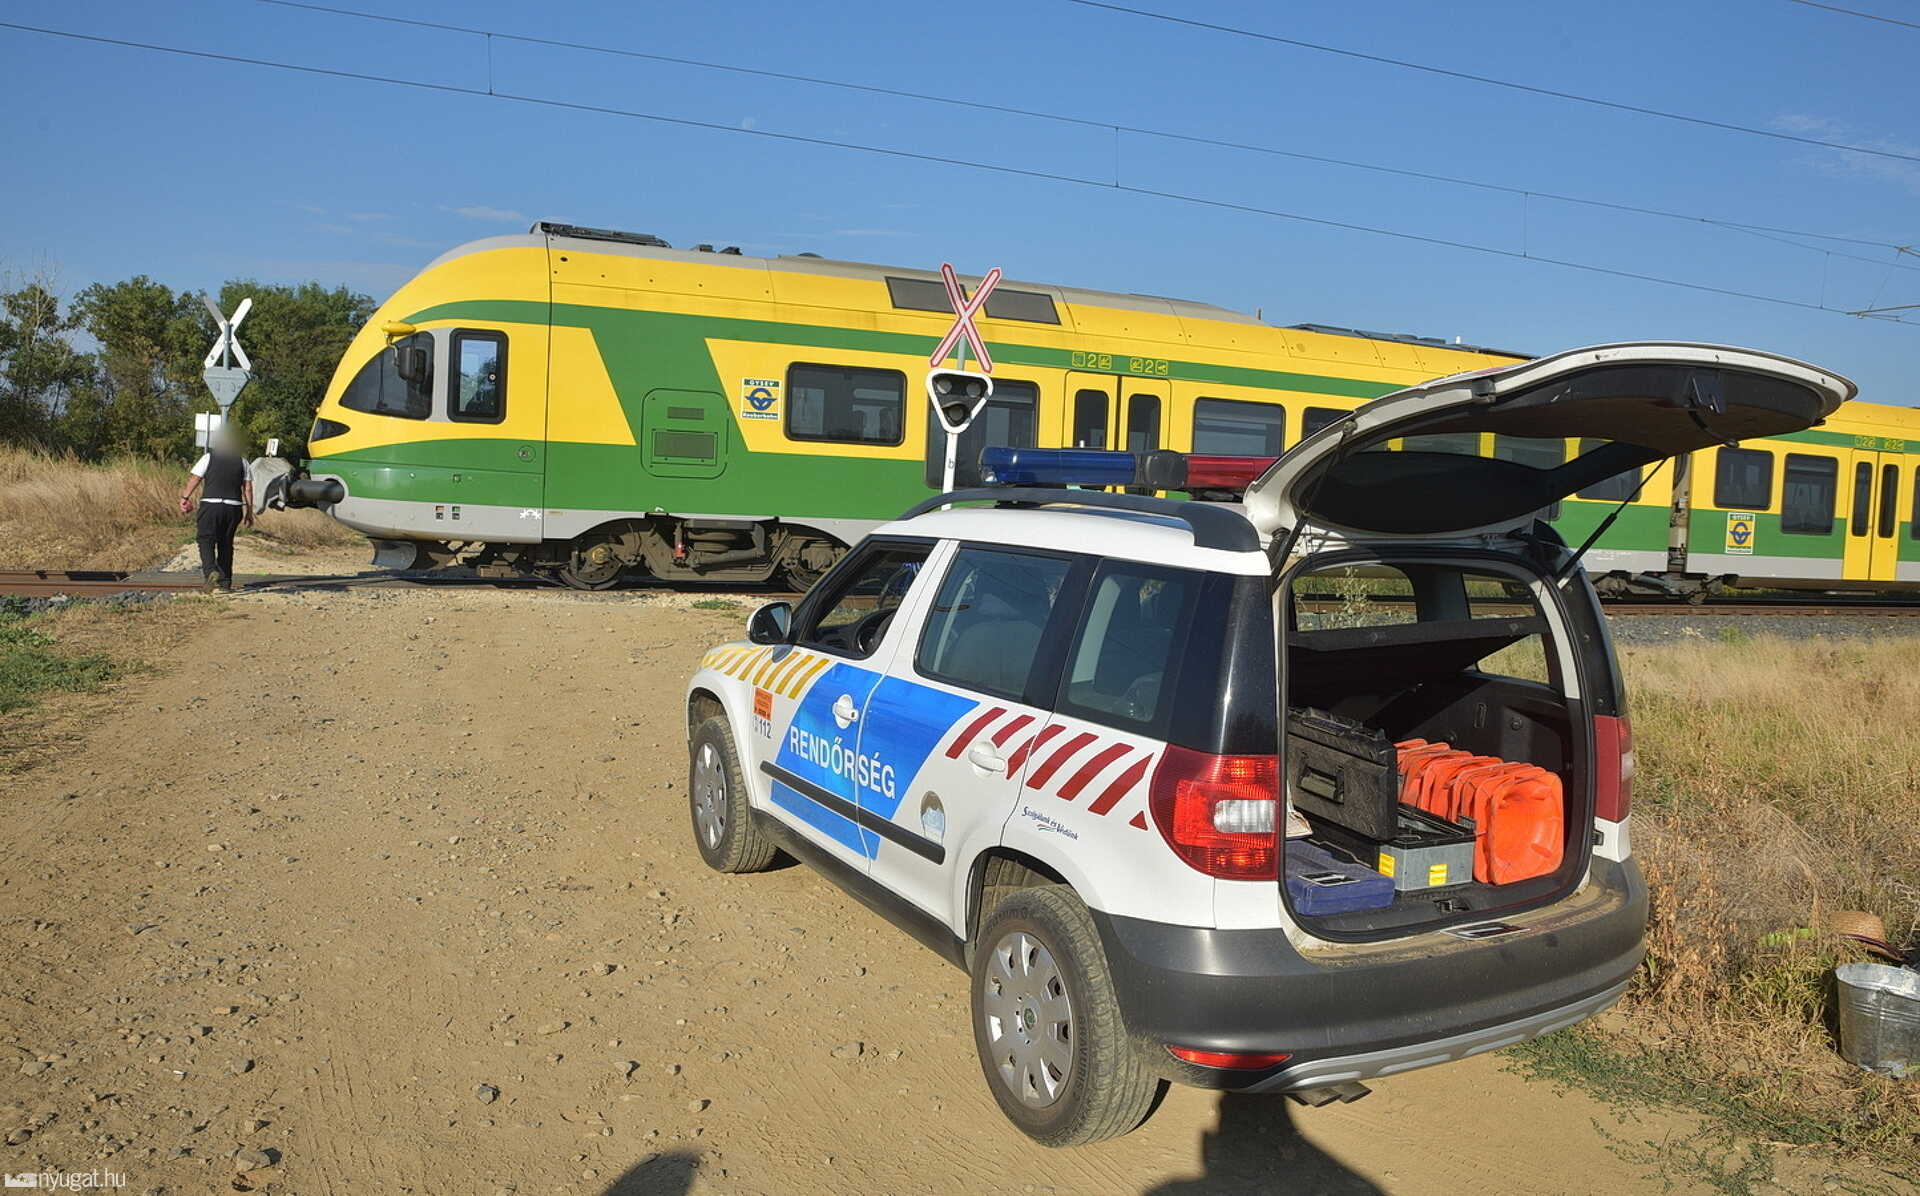 Incidente ferroviario a Sorkikapolna: ha camminato tra i binari e ha affrontato la locomotiva, quindi ha aspettato la morte